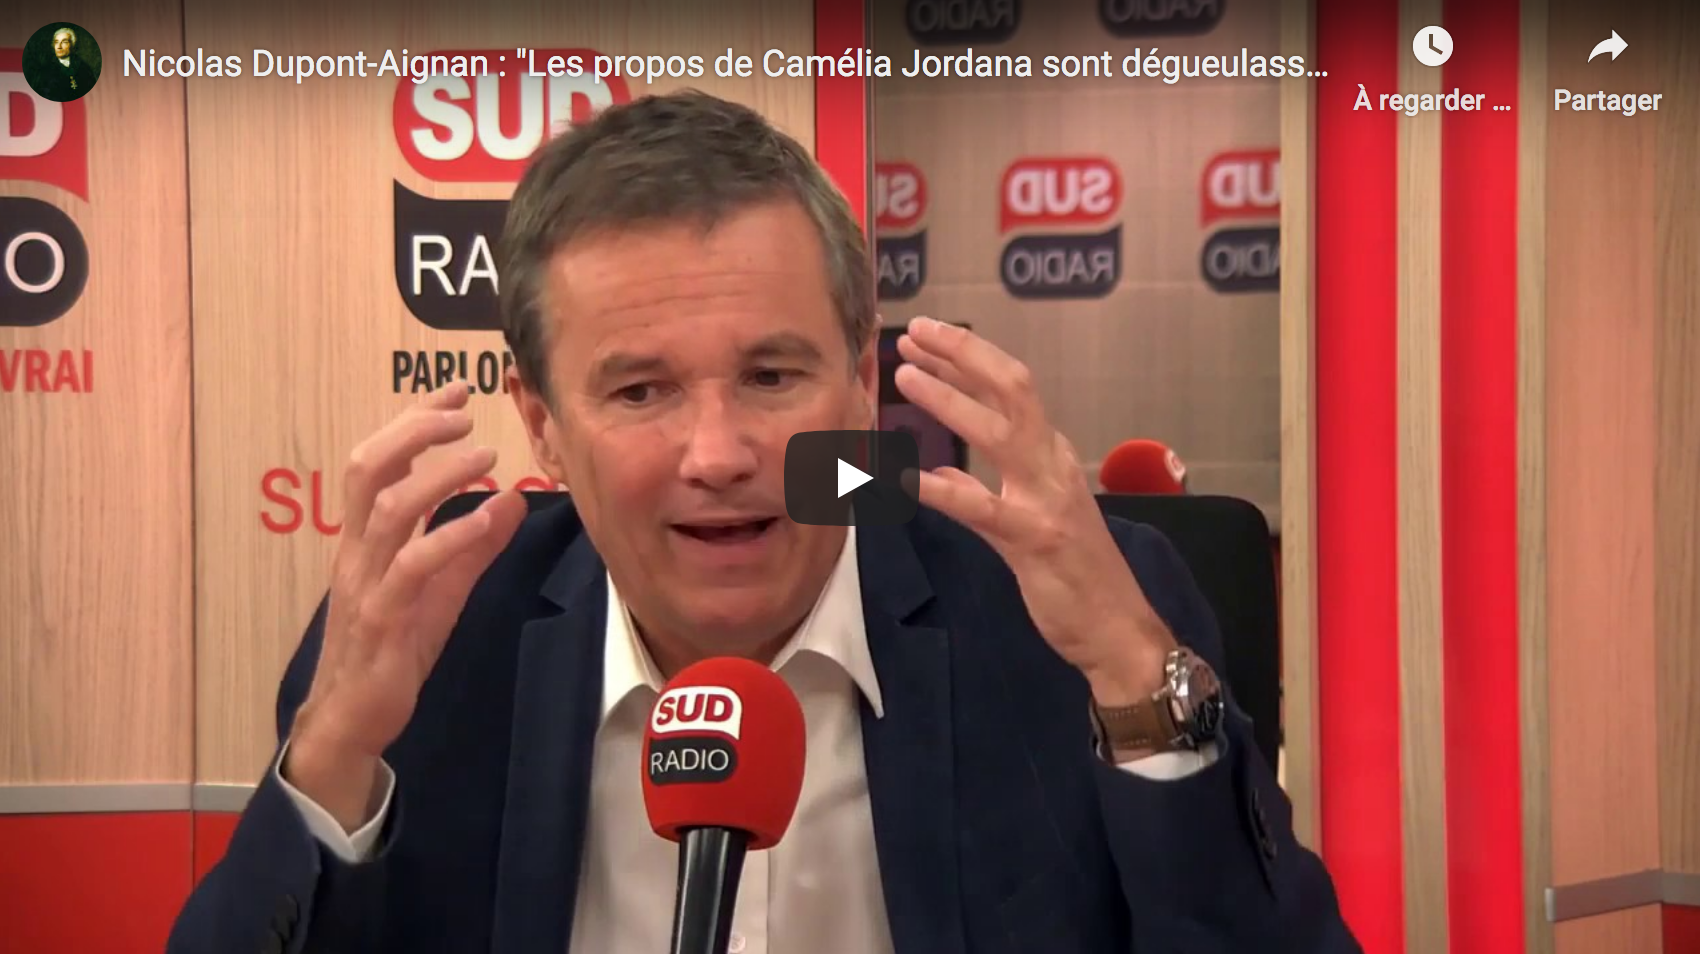 Traitement du Covid-19 : Nicolas Dupont-Aignan dénonce des “conflits d’intérêts au sommet” (VIDÉO)